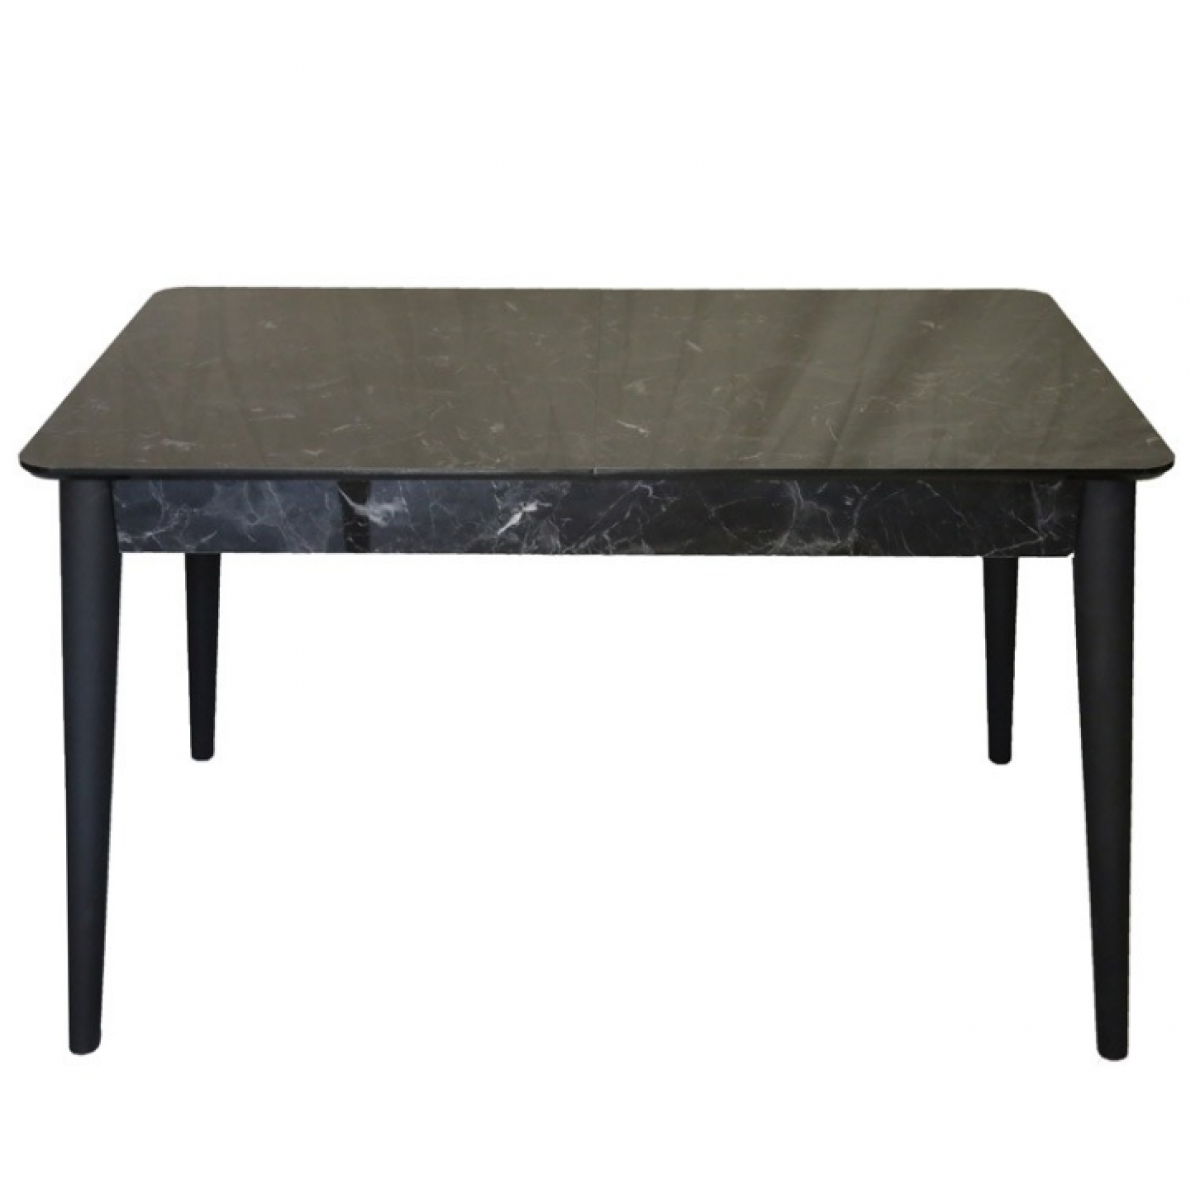 Τραπέζι "DREAMY" ανοιγόμενο από ξύλο/mdf σε χρώμα μαύρο μαρμάρου 130x80x75